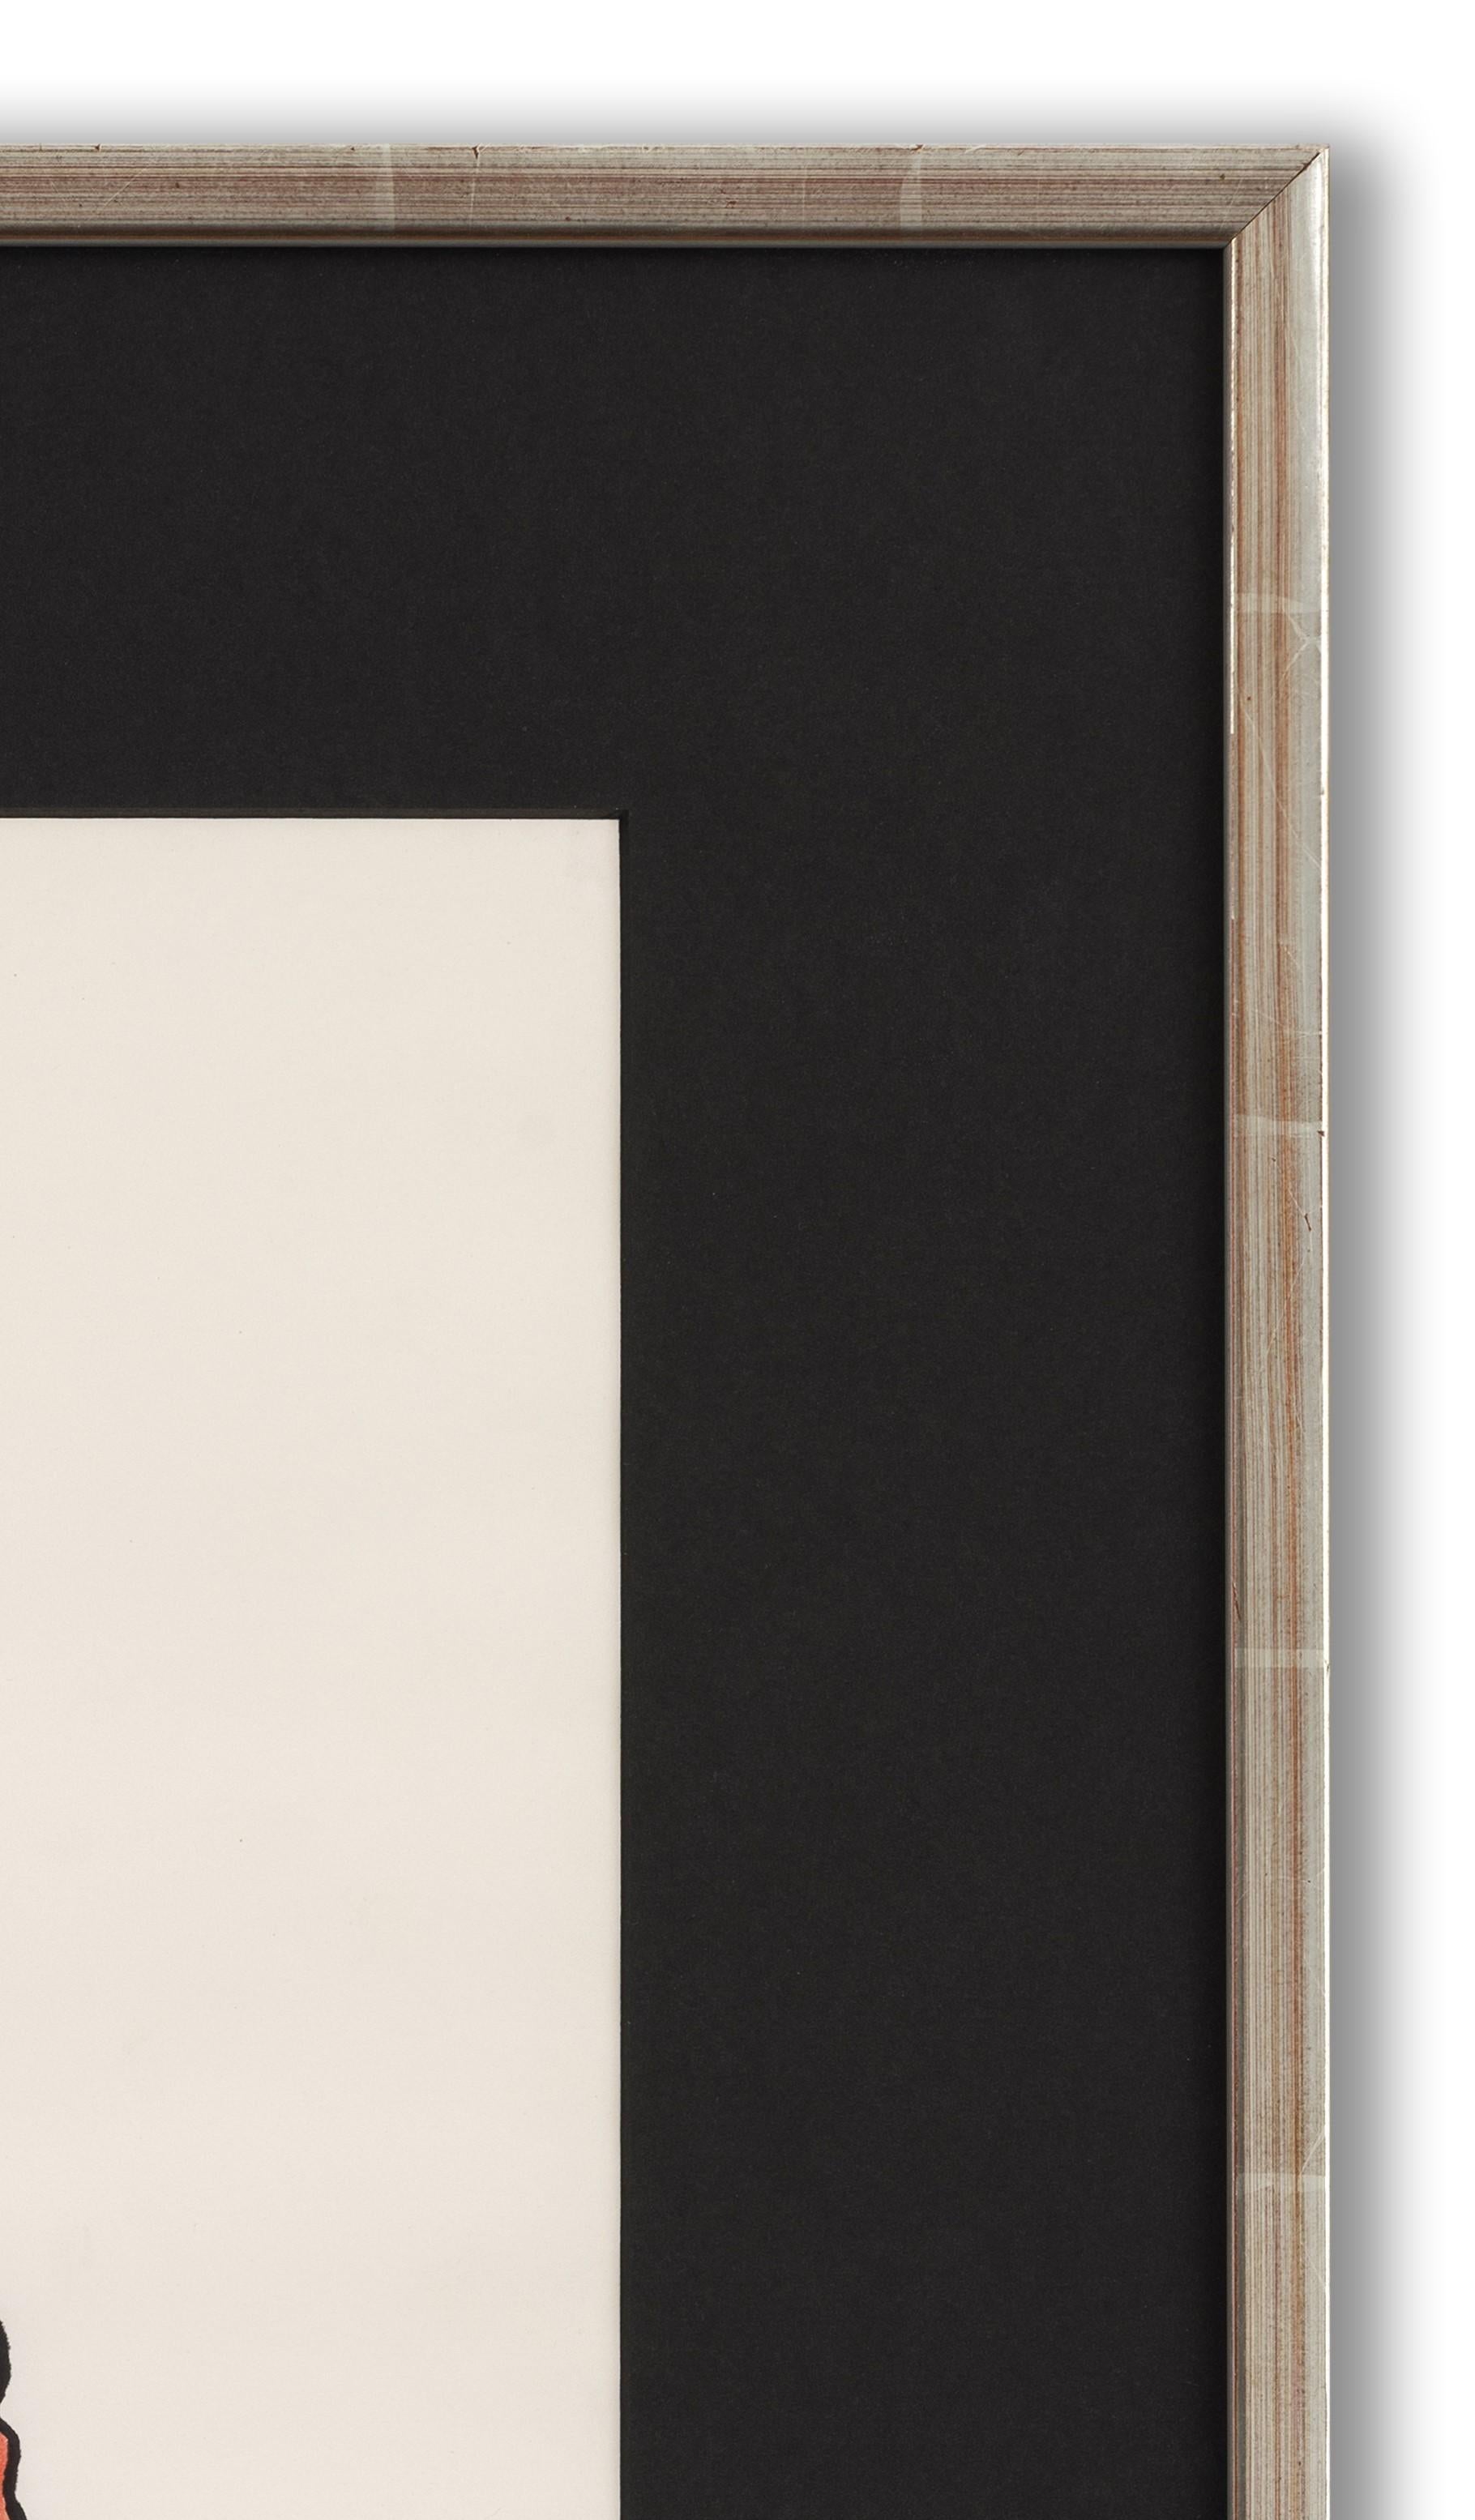 Aquarell, Filzstift und Bleistift auf Papier, betitelt (unten links), 48cm x 37cm, (70cm x 58cm gerahmt). Es befindet sich in seinem ursprünglichen Rahmen, obwohl das Glas und die Fassung ersetzt wurden. 

Patrick Procktor war Teil einer